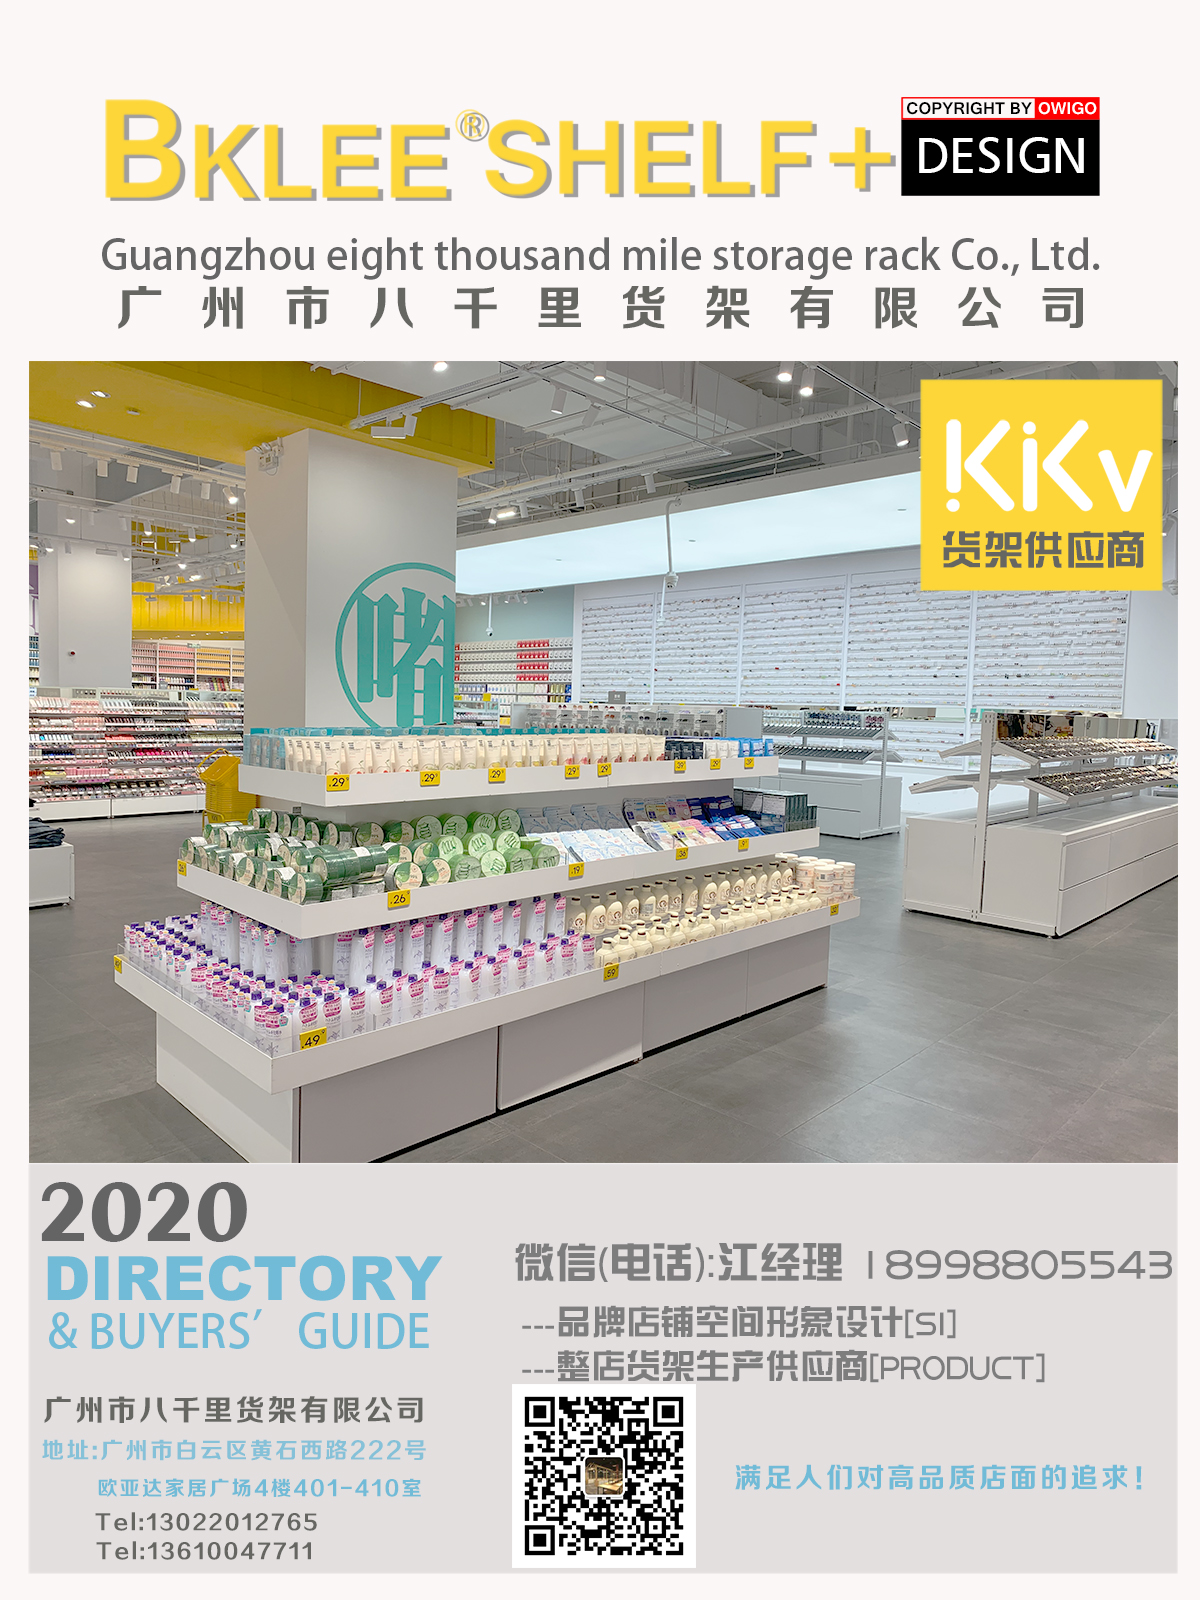 广州快时尚KKV货架设计定制 整店形象道具输出 kkv货架生产，店面形象设计